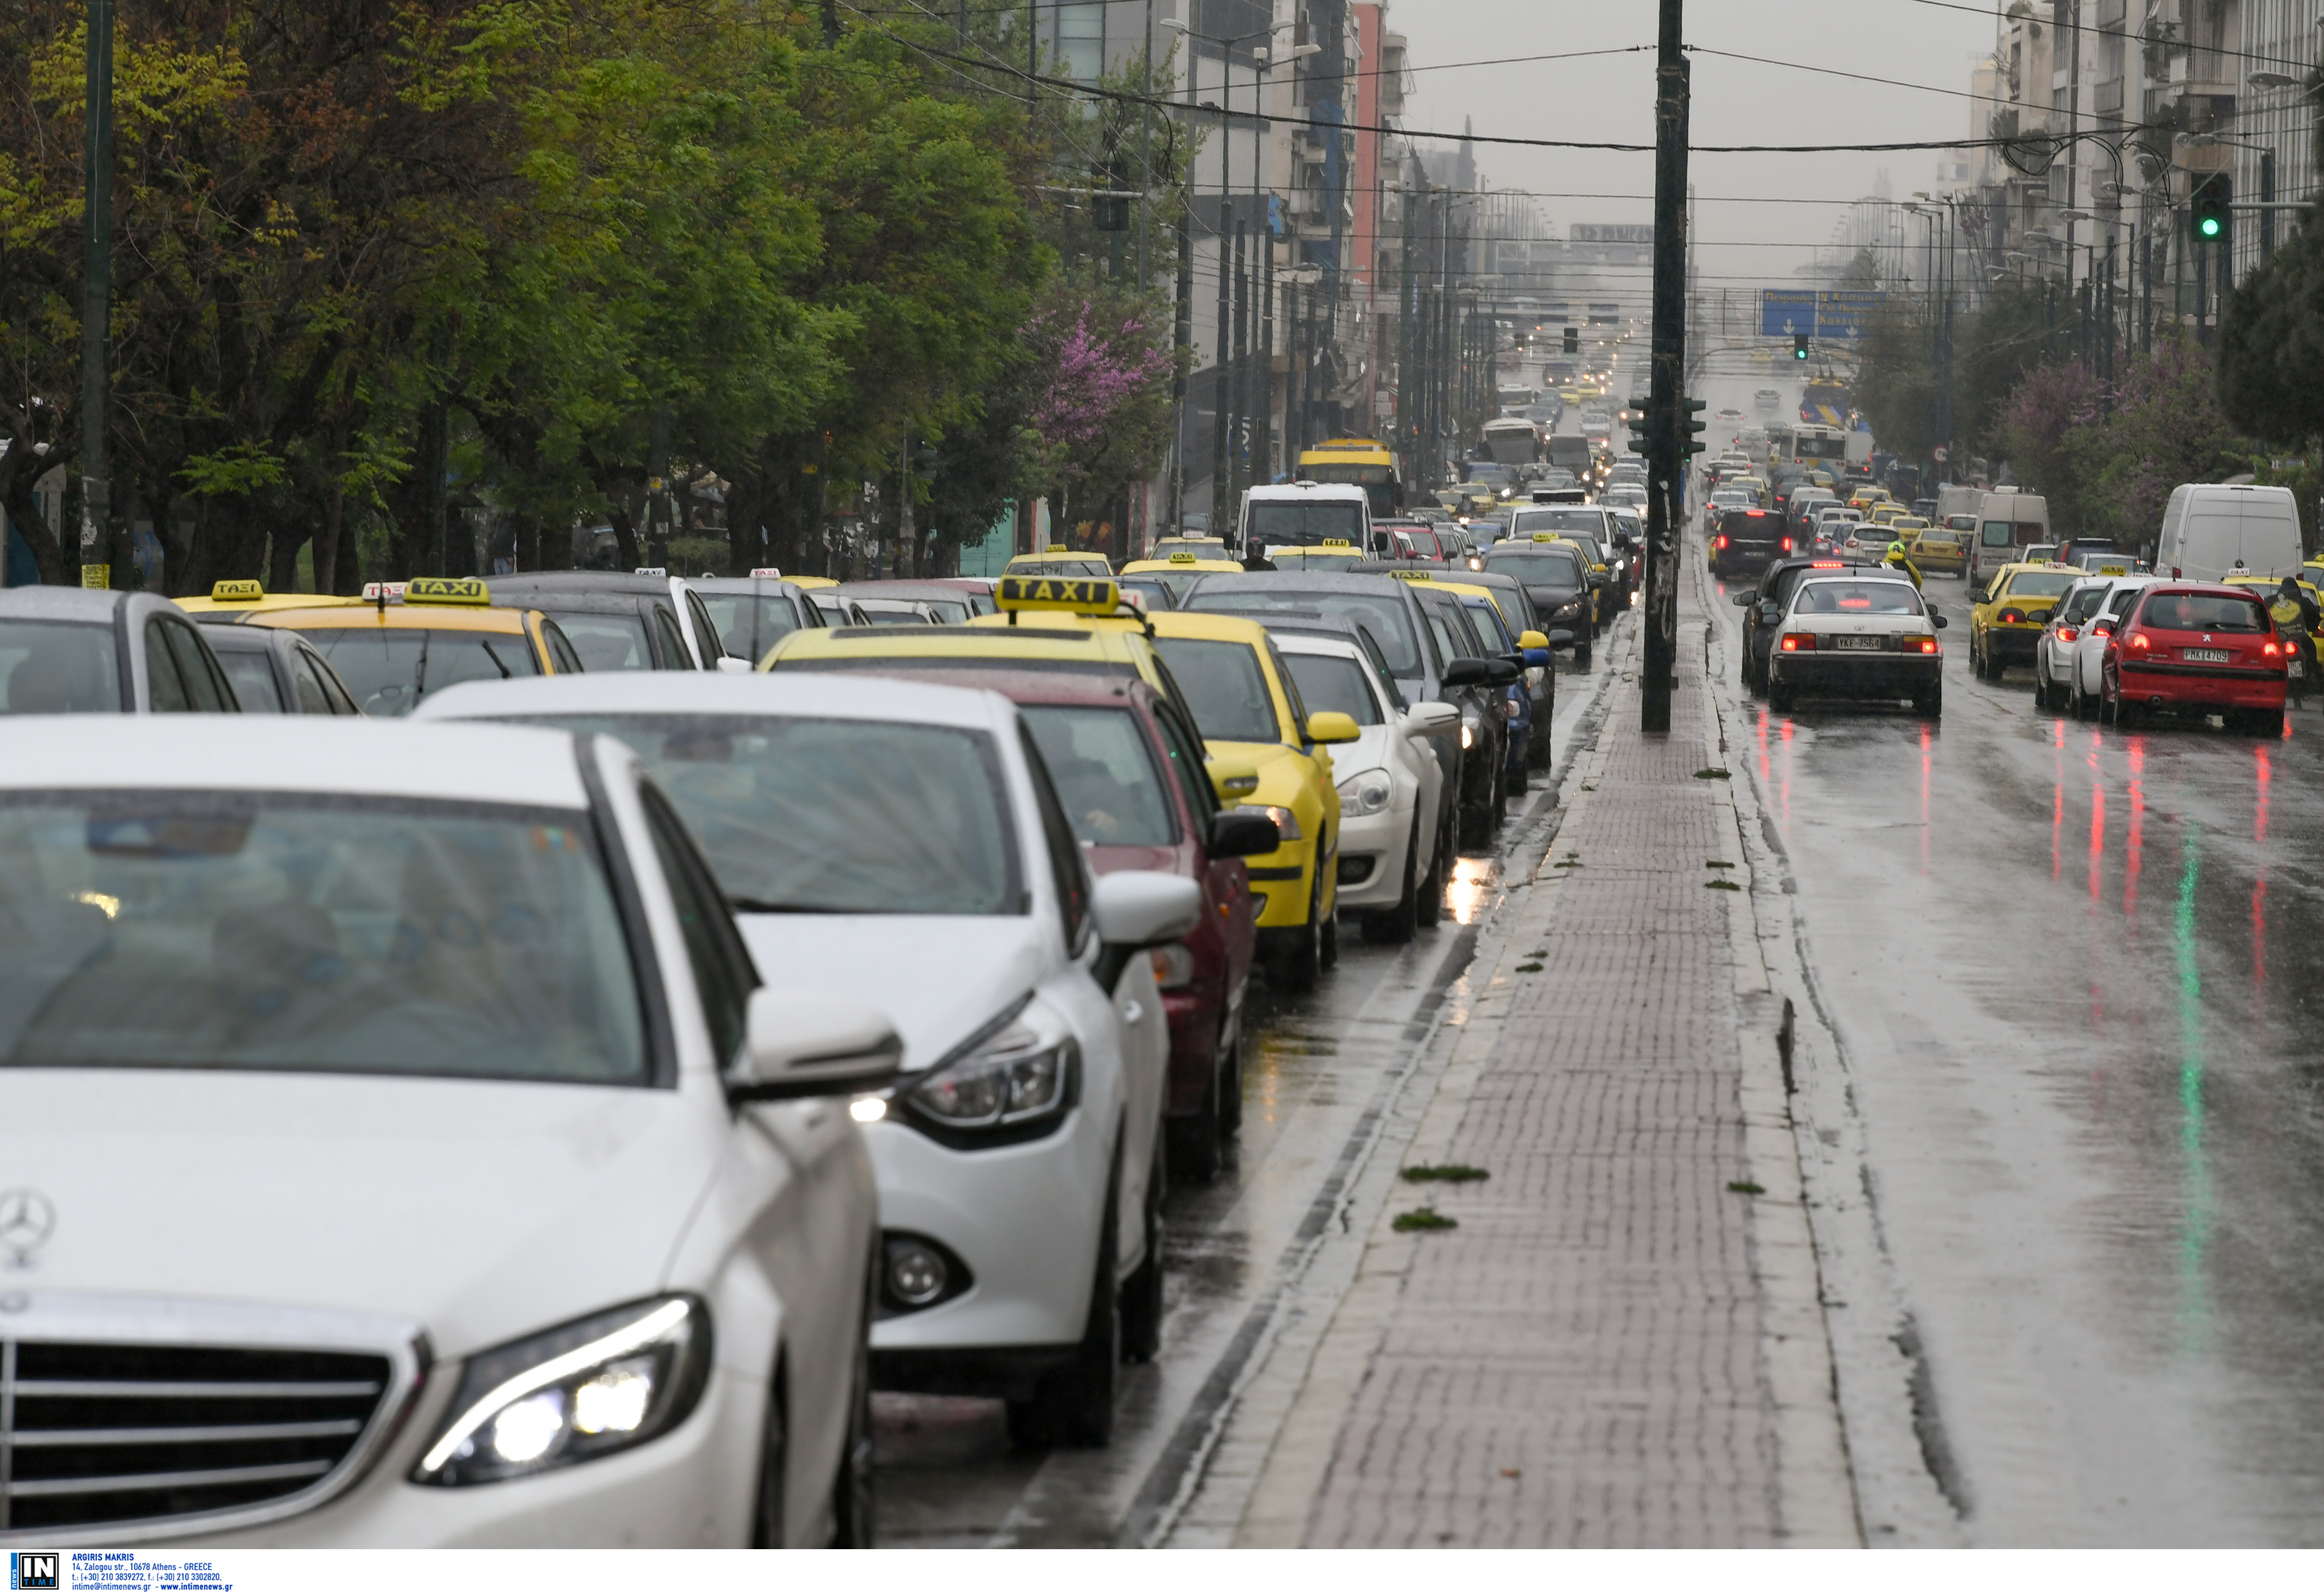 Καιρός: Κίνηση παντού! Ανατροπή φορτηγού στην Αθηνών – Λαμίας, διακοπή κυκλοφορίας στη Μαρκοπούλου